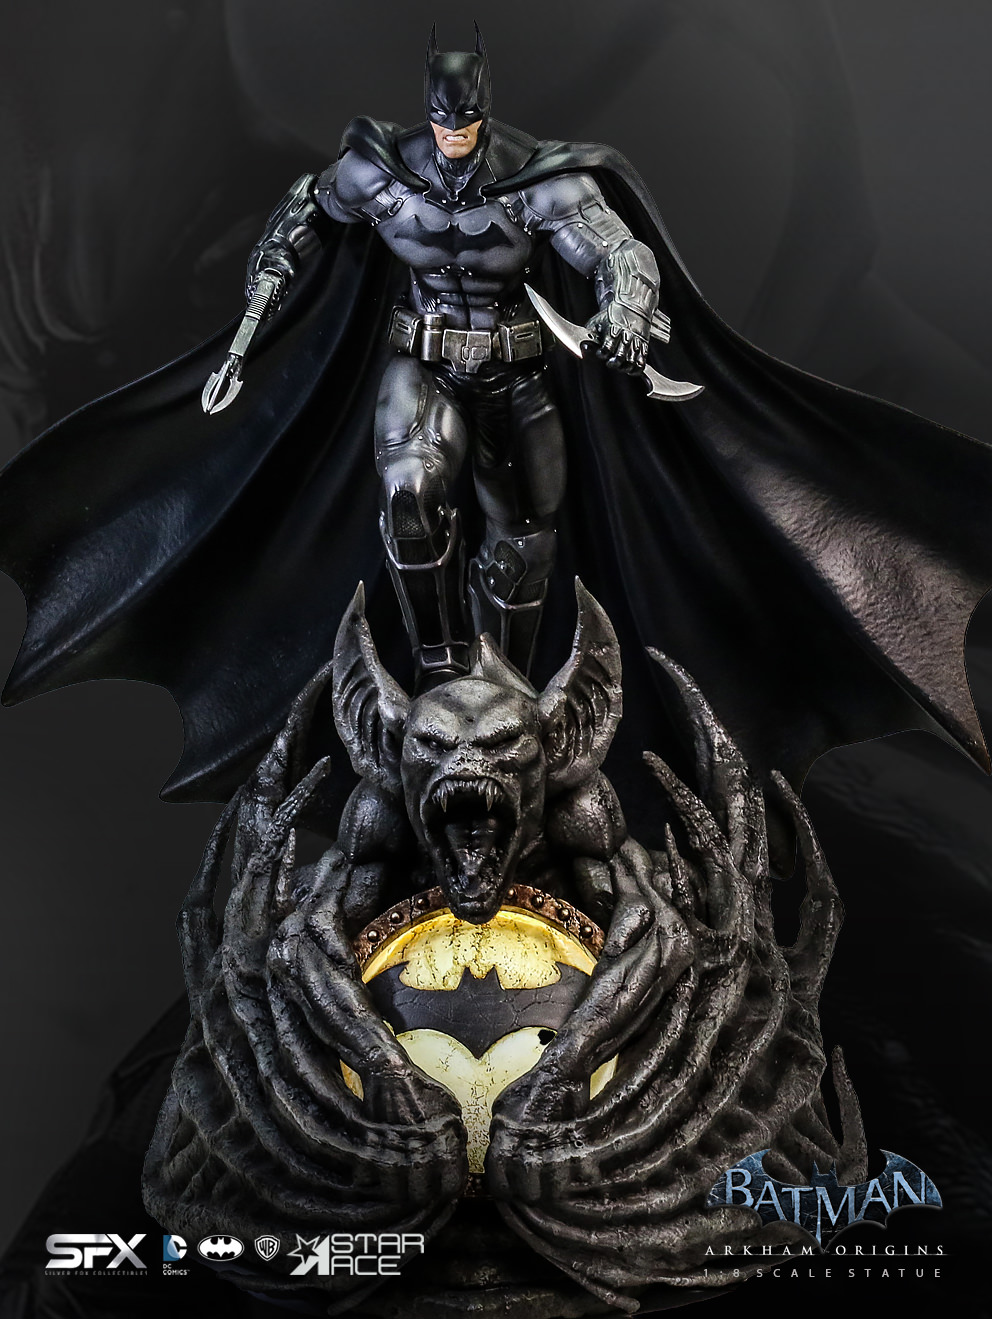 Batman Arkham Origins Exclusive Edition (Prototype Shown) View 21